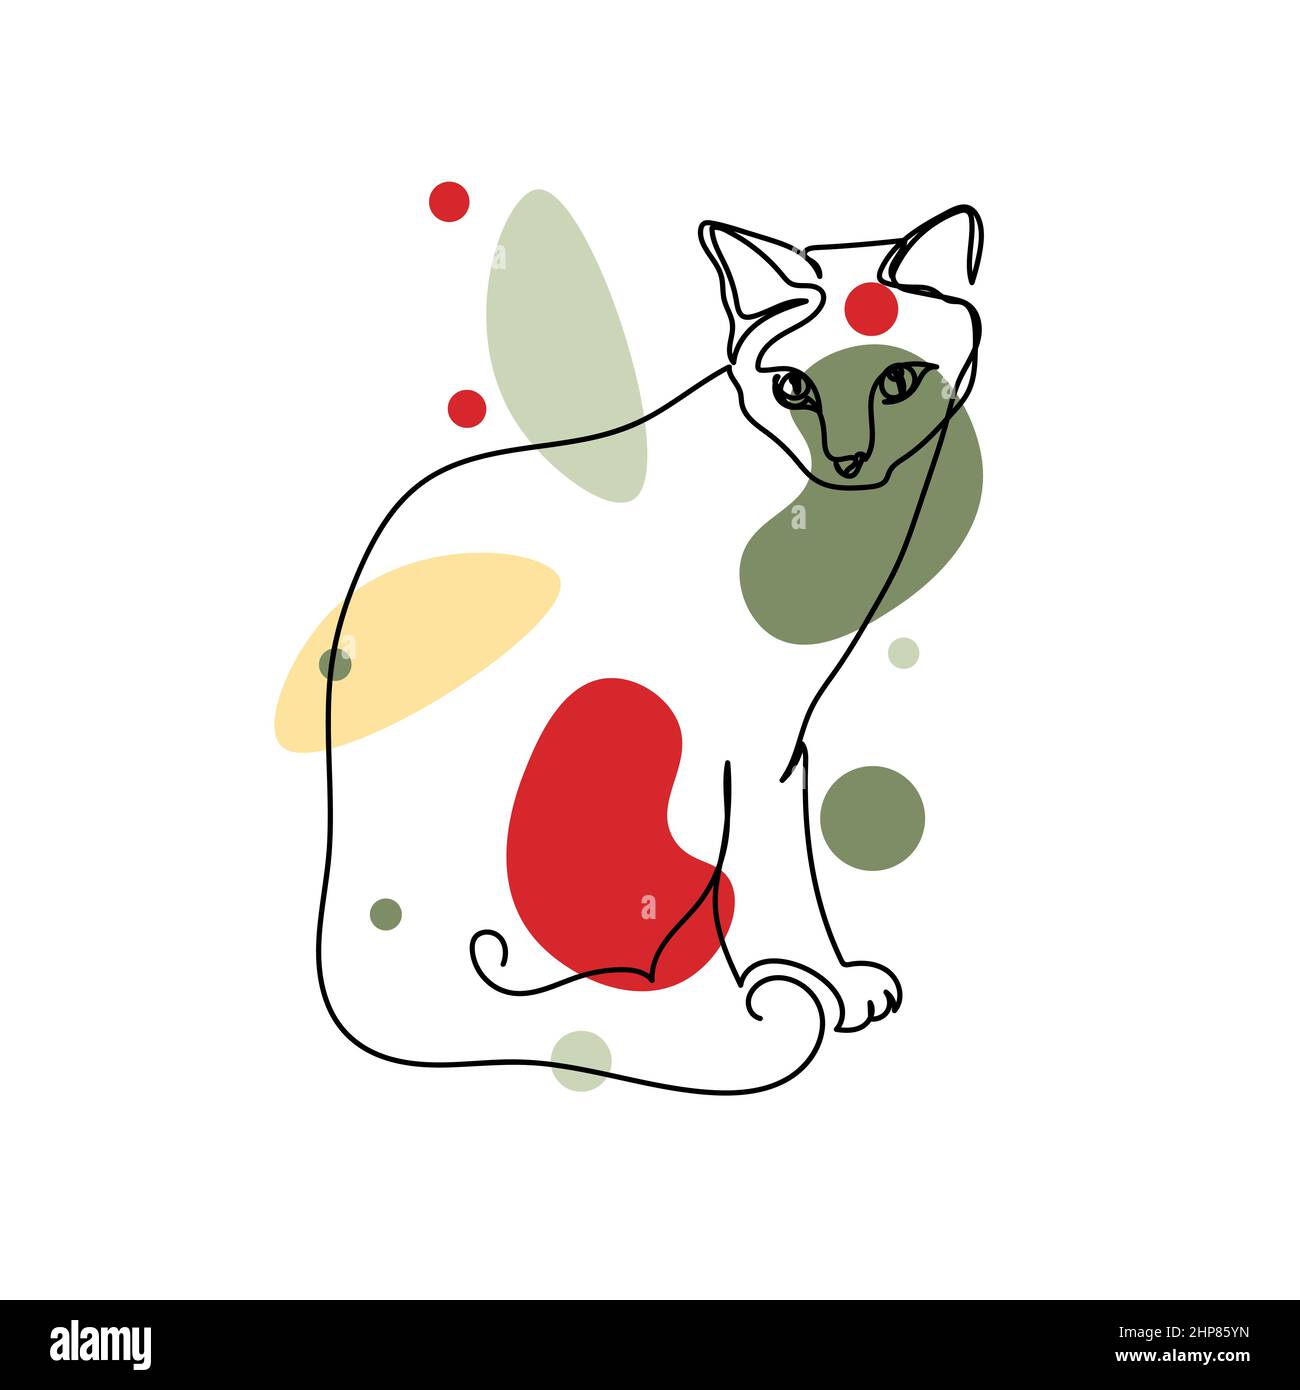 Vecteur abstrait continu une seule ligne simple dessin icône de chat kitty assis dans le dessin de silhouette. Idéal pour les cartes de vœux Illustration de Vecteur